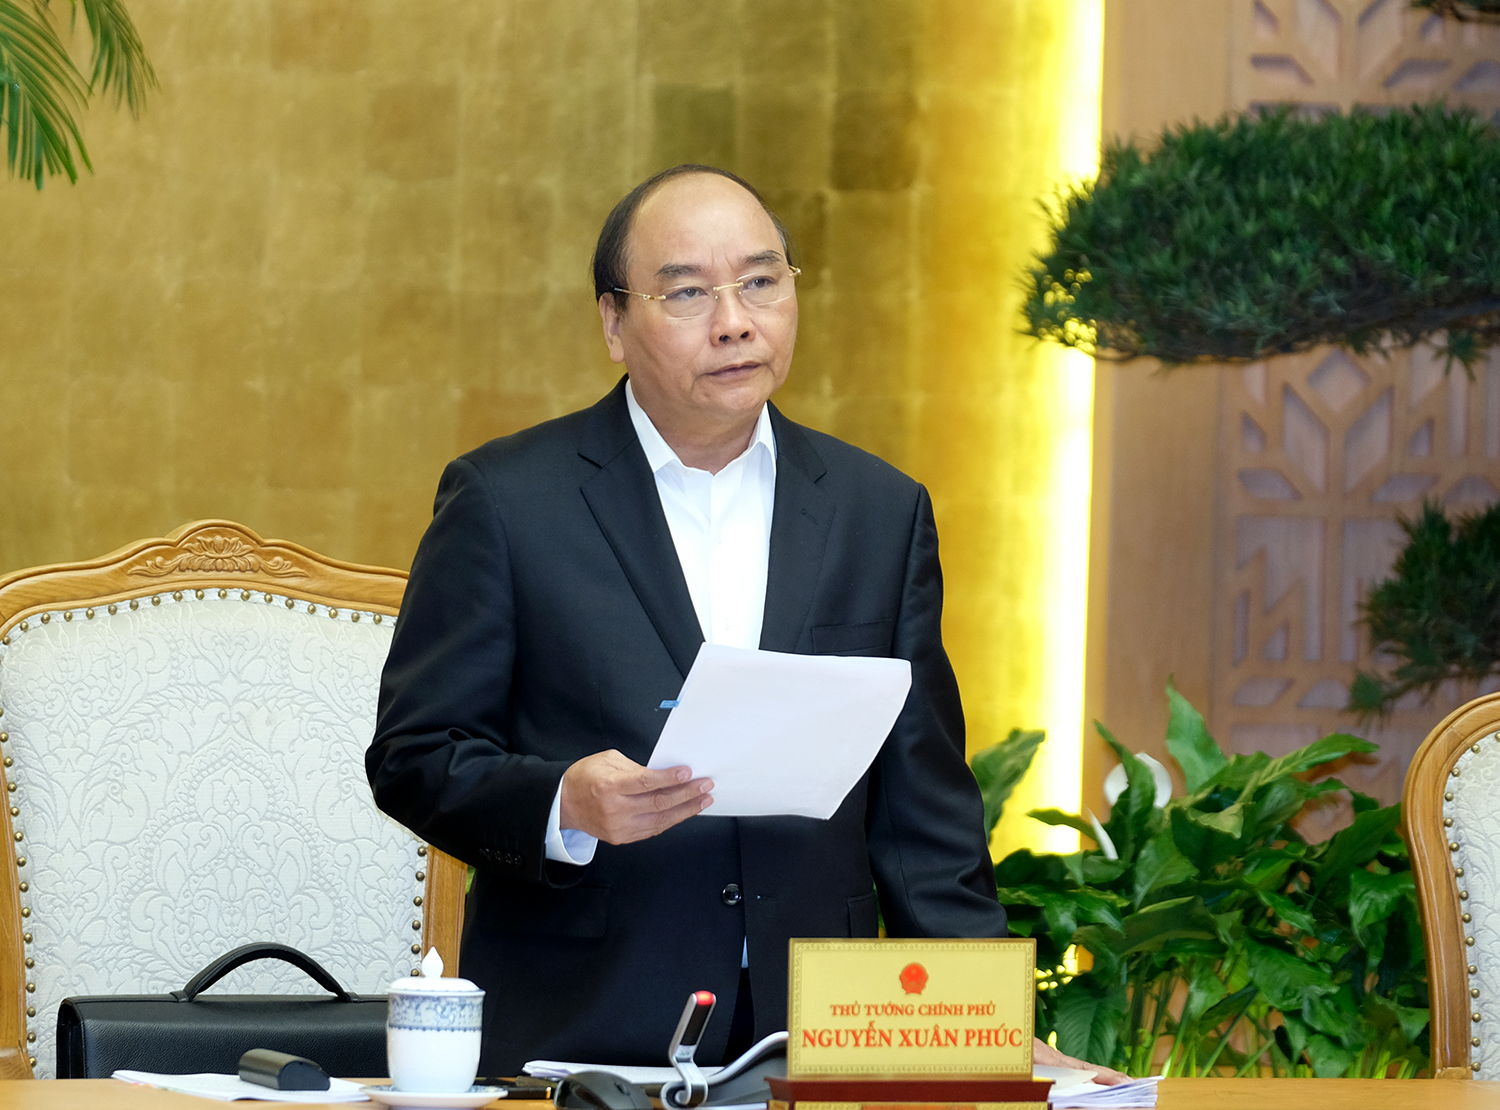 Thủ tướng Nguyễn Xuân Phúc: Sức ép lạm phát năm nay sẽ lớn hơn